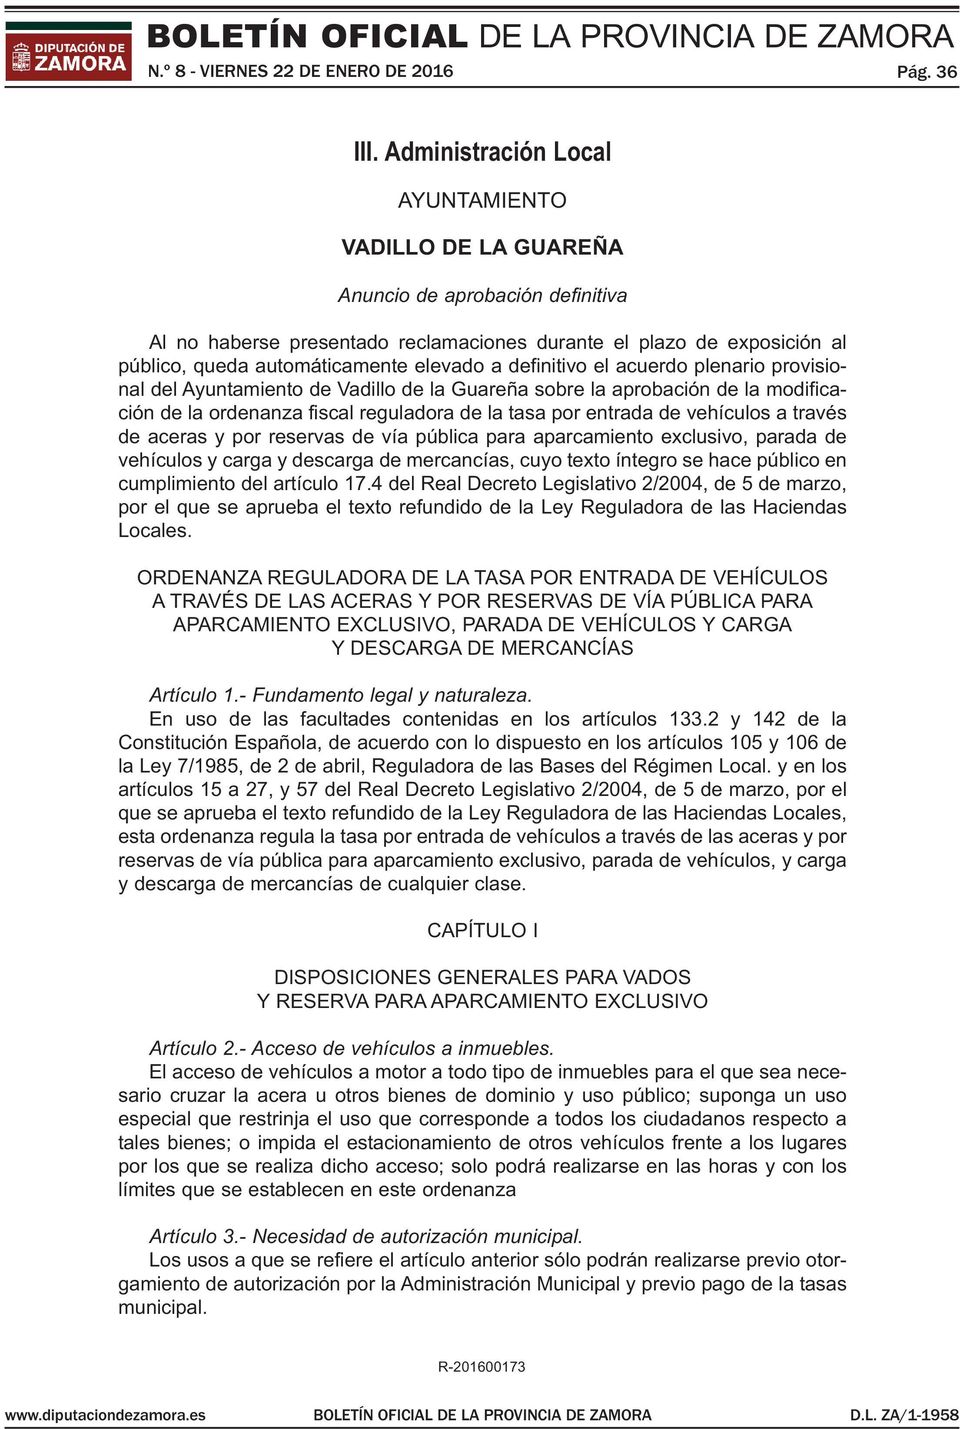 elevado a definitivo el acuerdo plenario provisional del Ayuntamiento de Vadillo de la Guareña sobre la aprobación de la modificación de la ordenanza fiscal reguladora de la tasa por entrada de